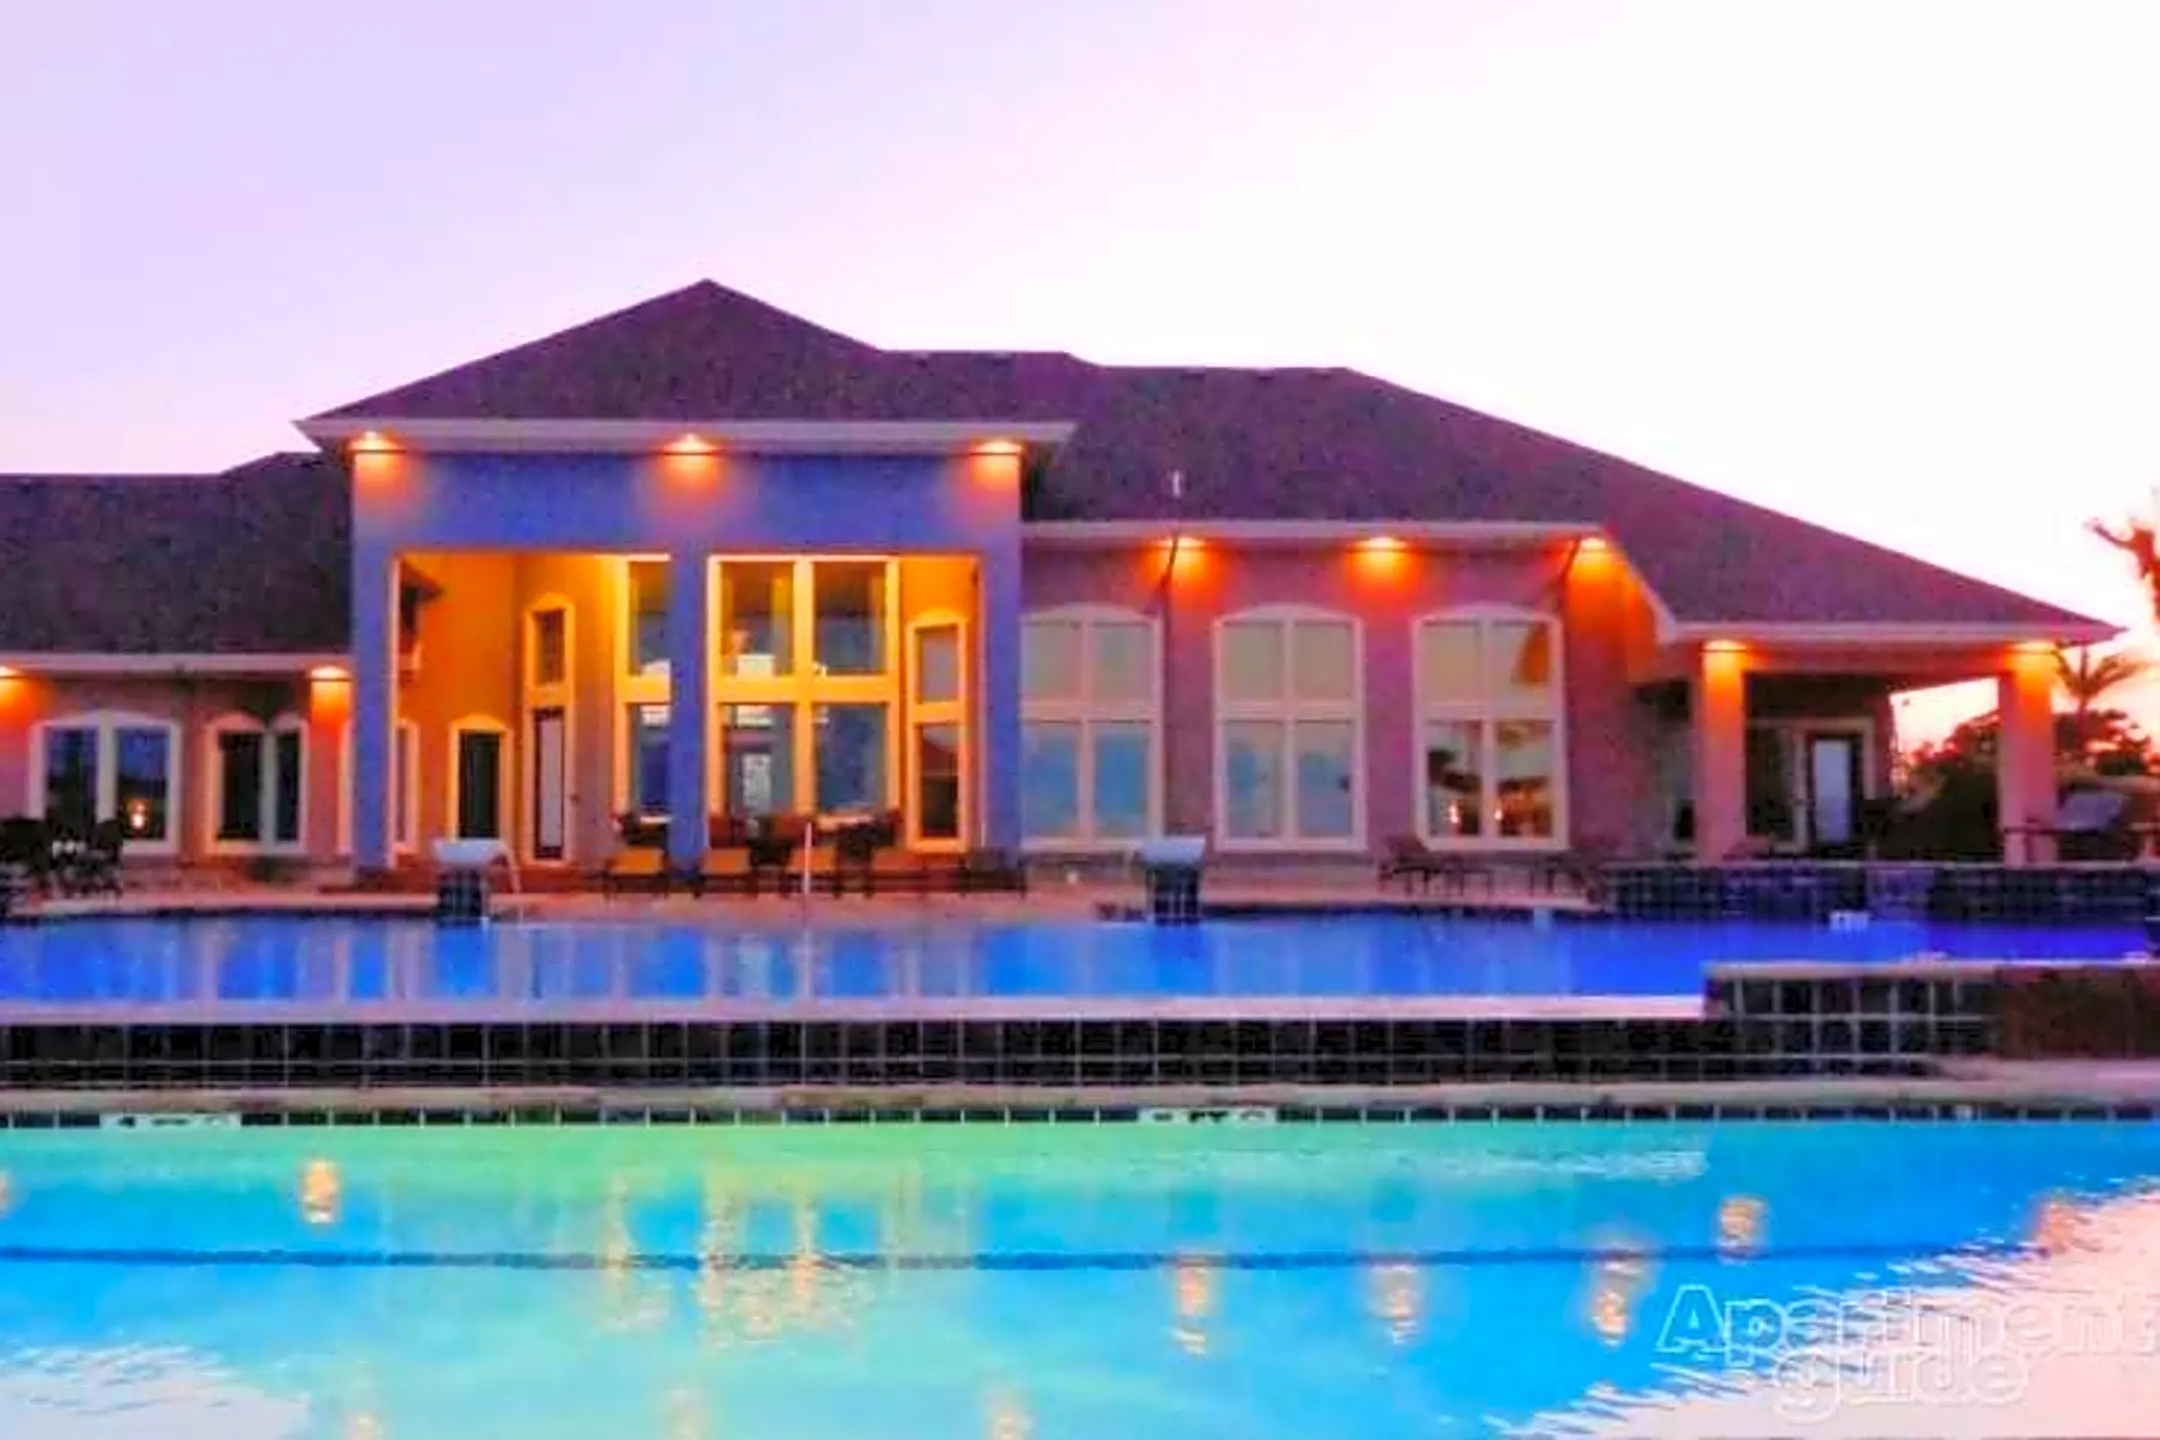 Pool - La Joya Bay Resort - Corpus Christi, TX